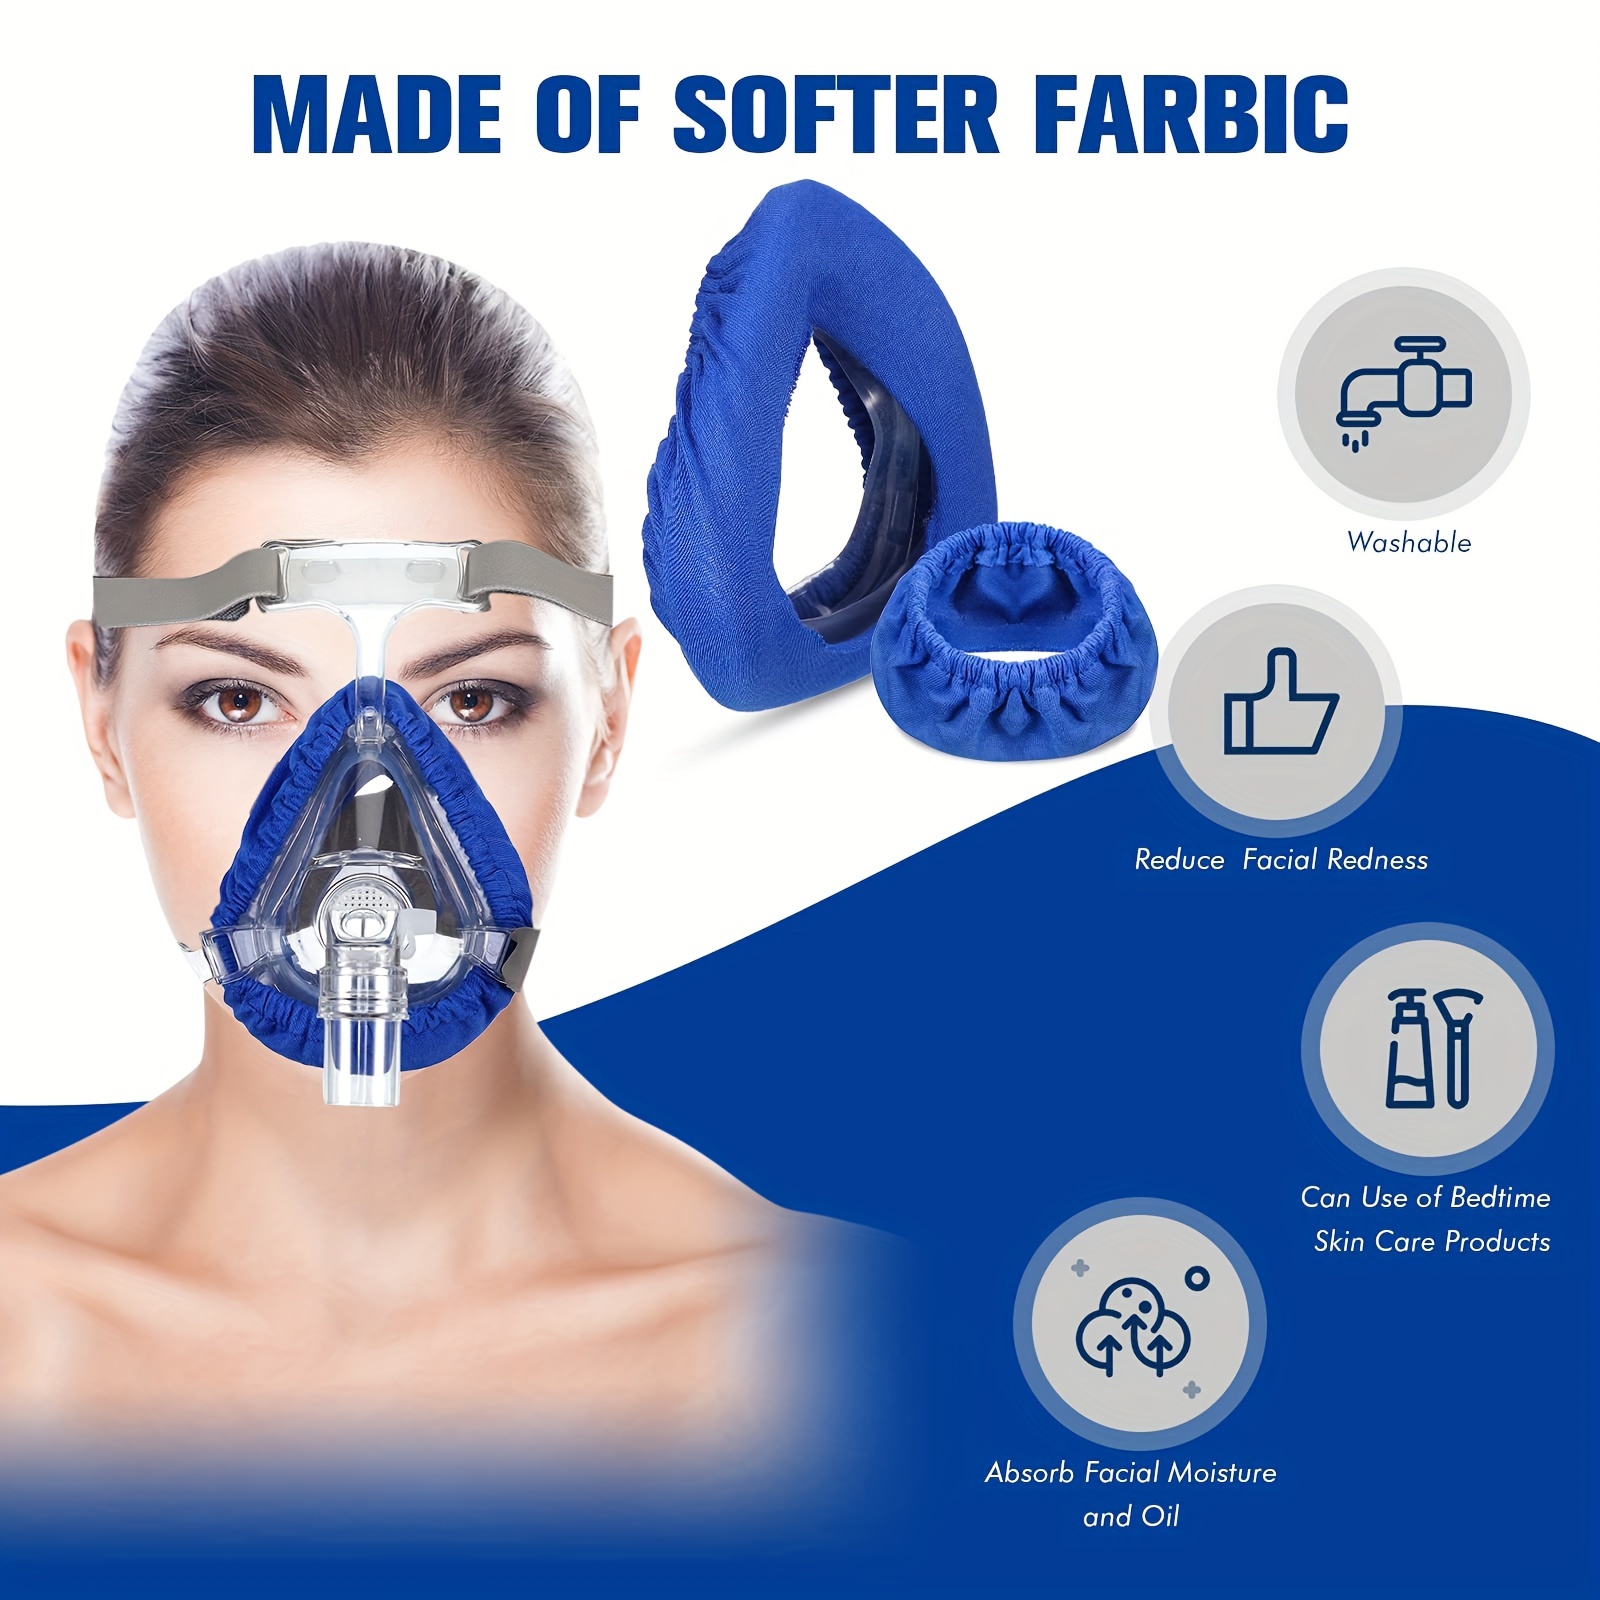 Paquete de 8 fundas para correas CPAP, accesorios y suministros para  máscaras CPAP, almohadillas suaves y duraderas, almohadillas cómodas para  reducir